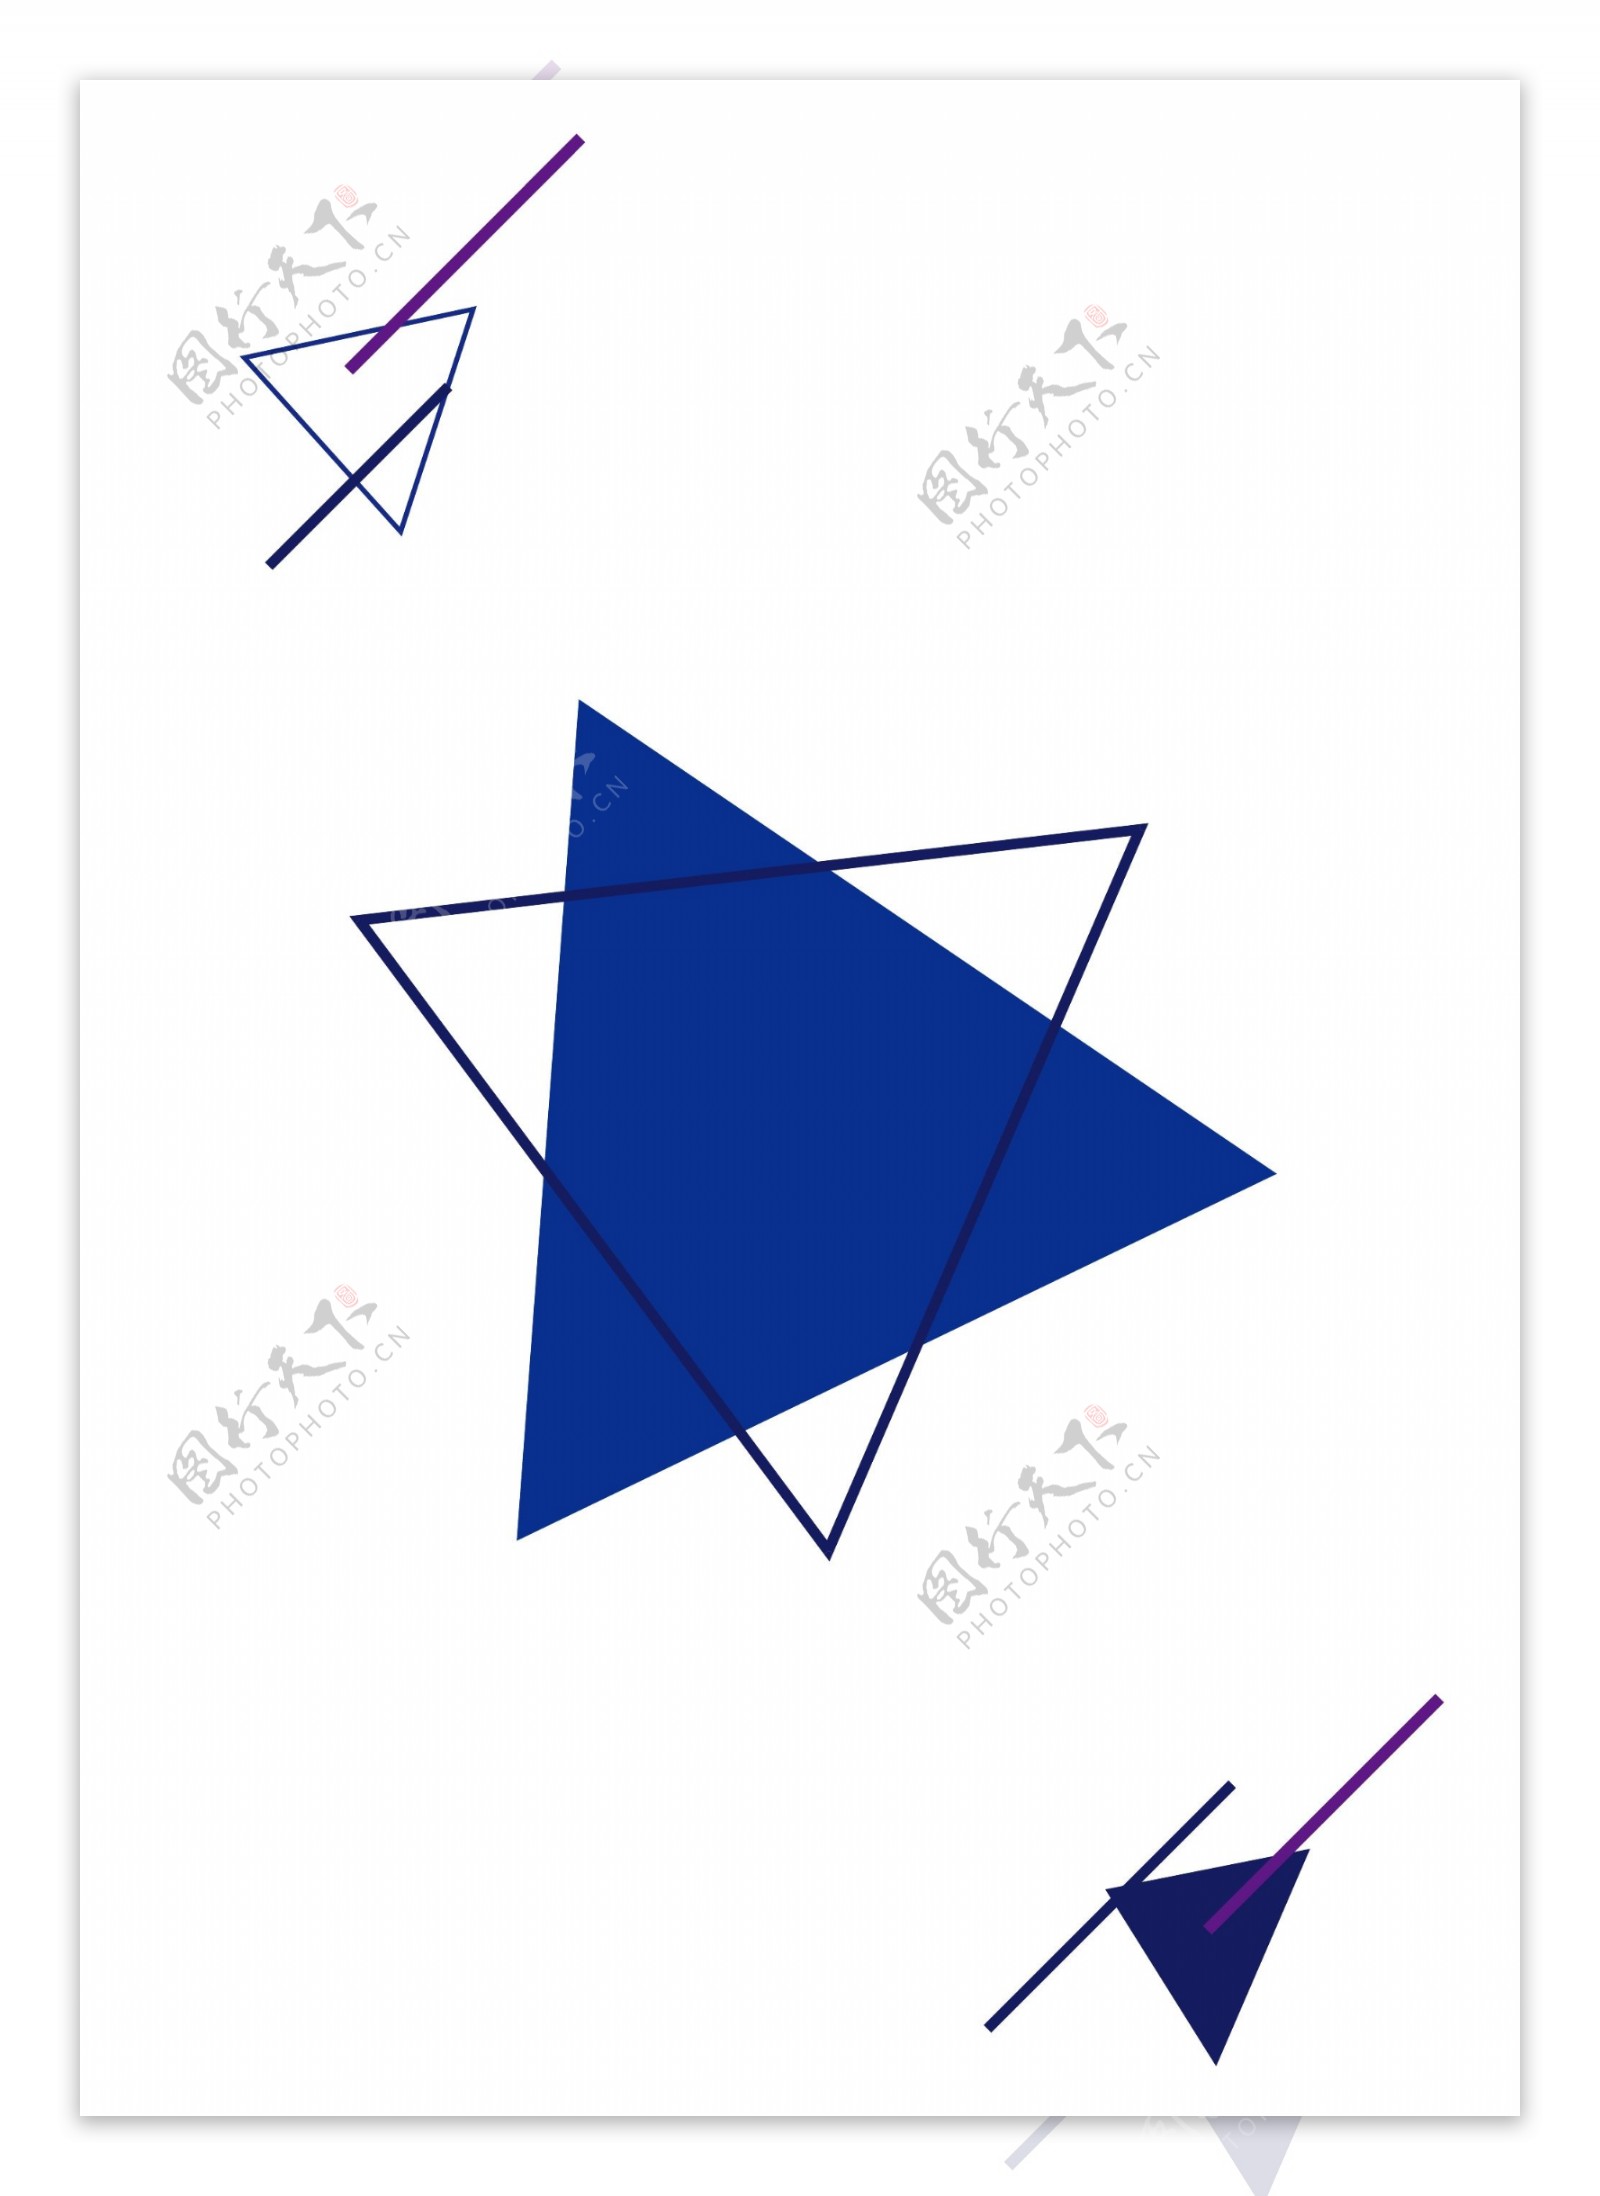 抽象蓝色三角形线条